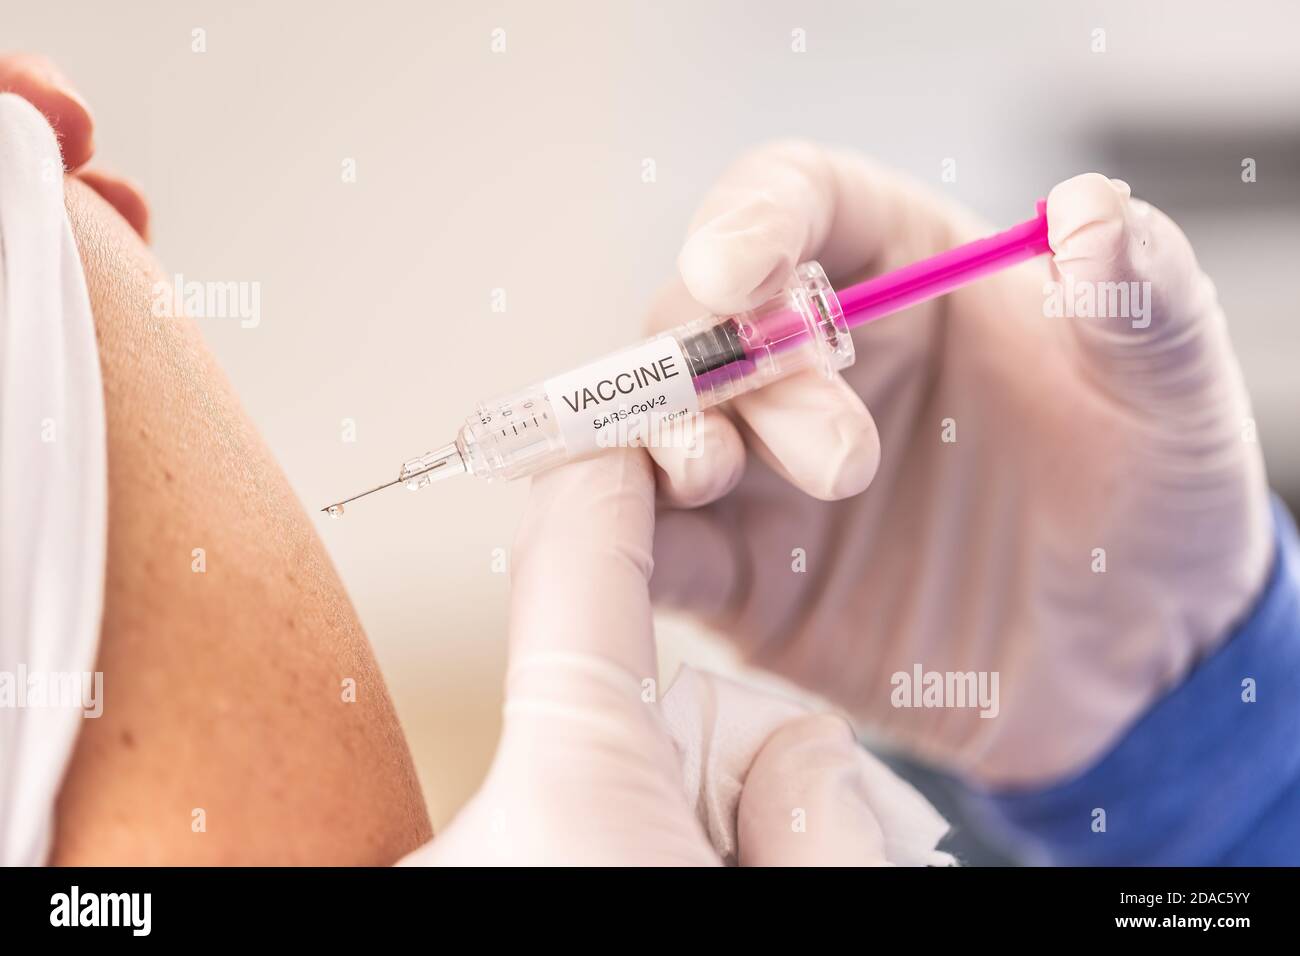 Détail d'une injection d'un vaccin contre le SRAS-COV-2 à l'épaule d'un patient. Coronavirus Covid-19 concept. Banque D'Images